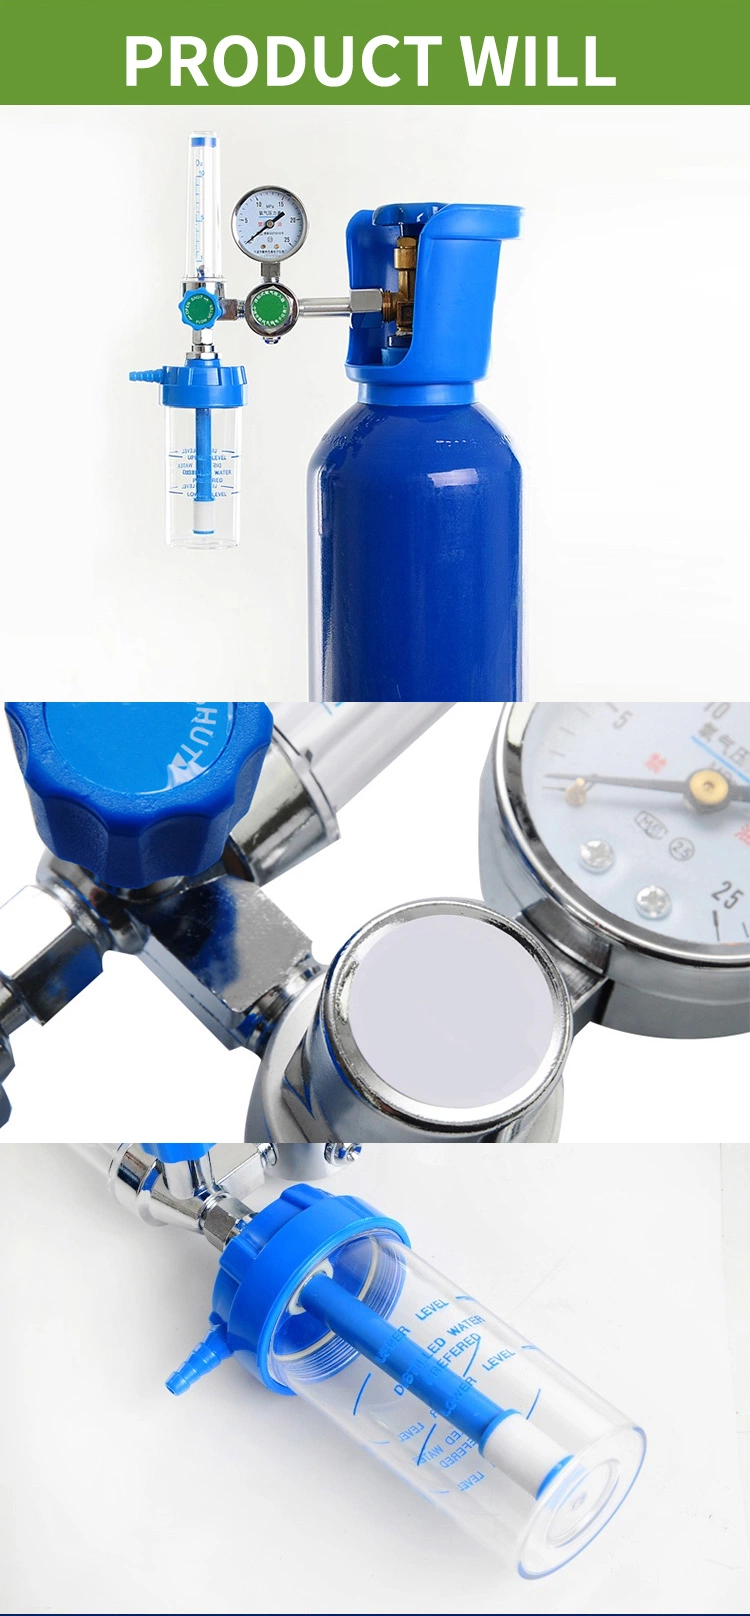 Good Quality Hopital Cylinders Medical Gas Gauge Meter Manometer Oxygen Pressure Regulator